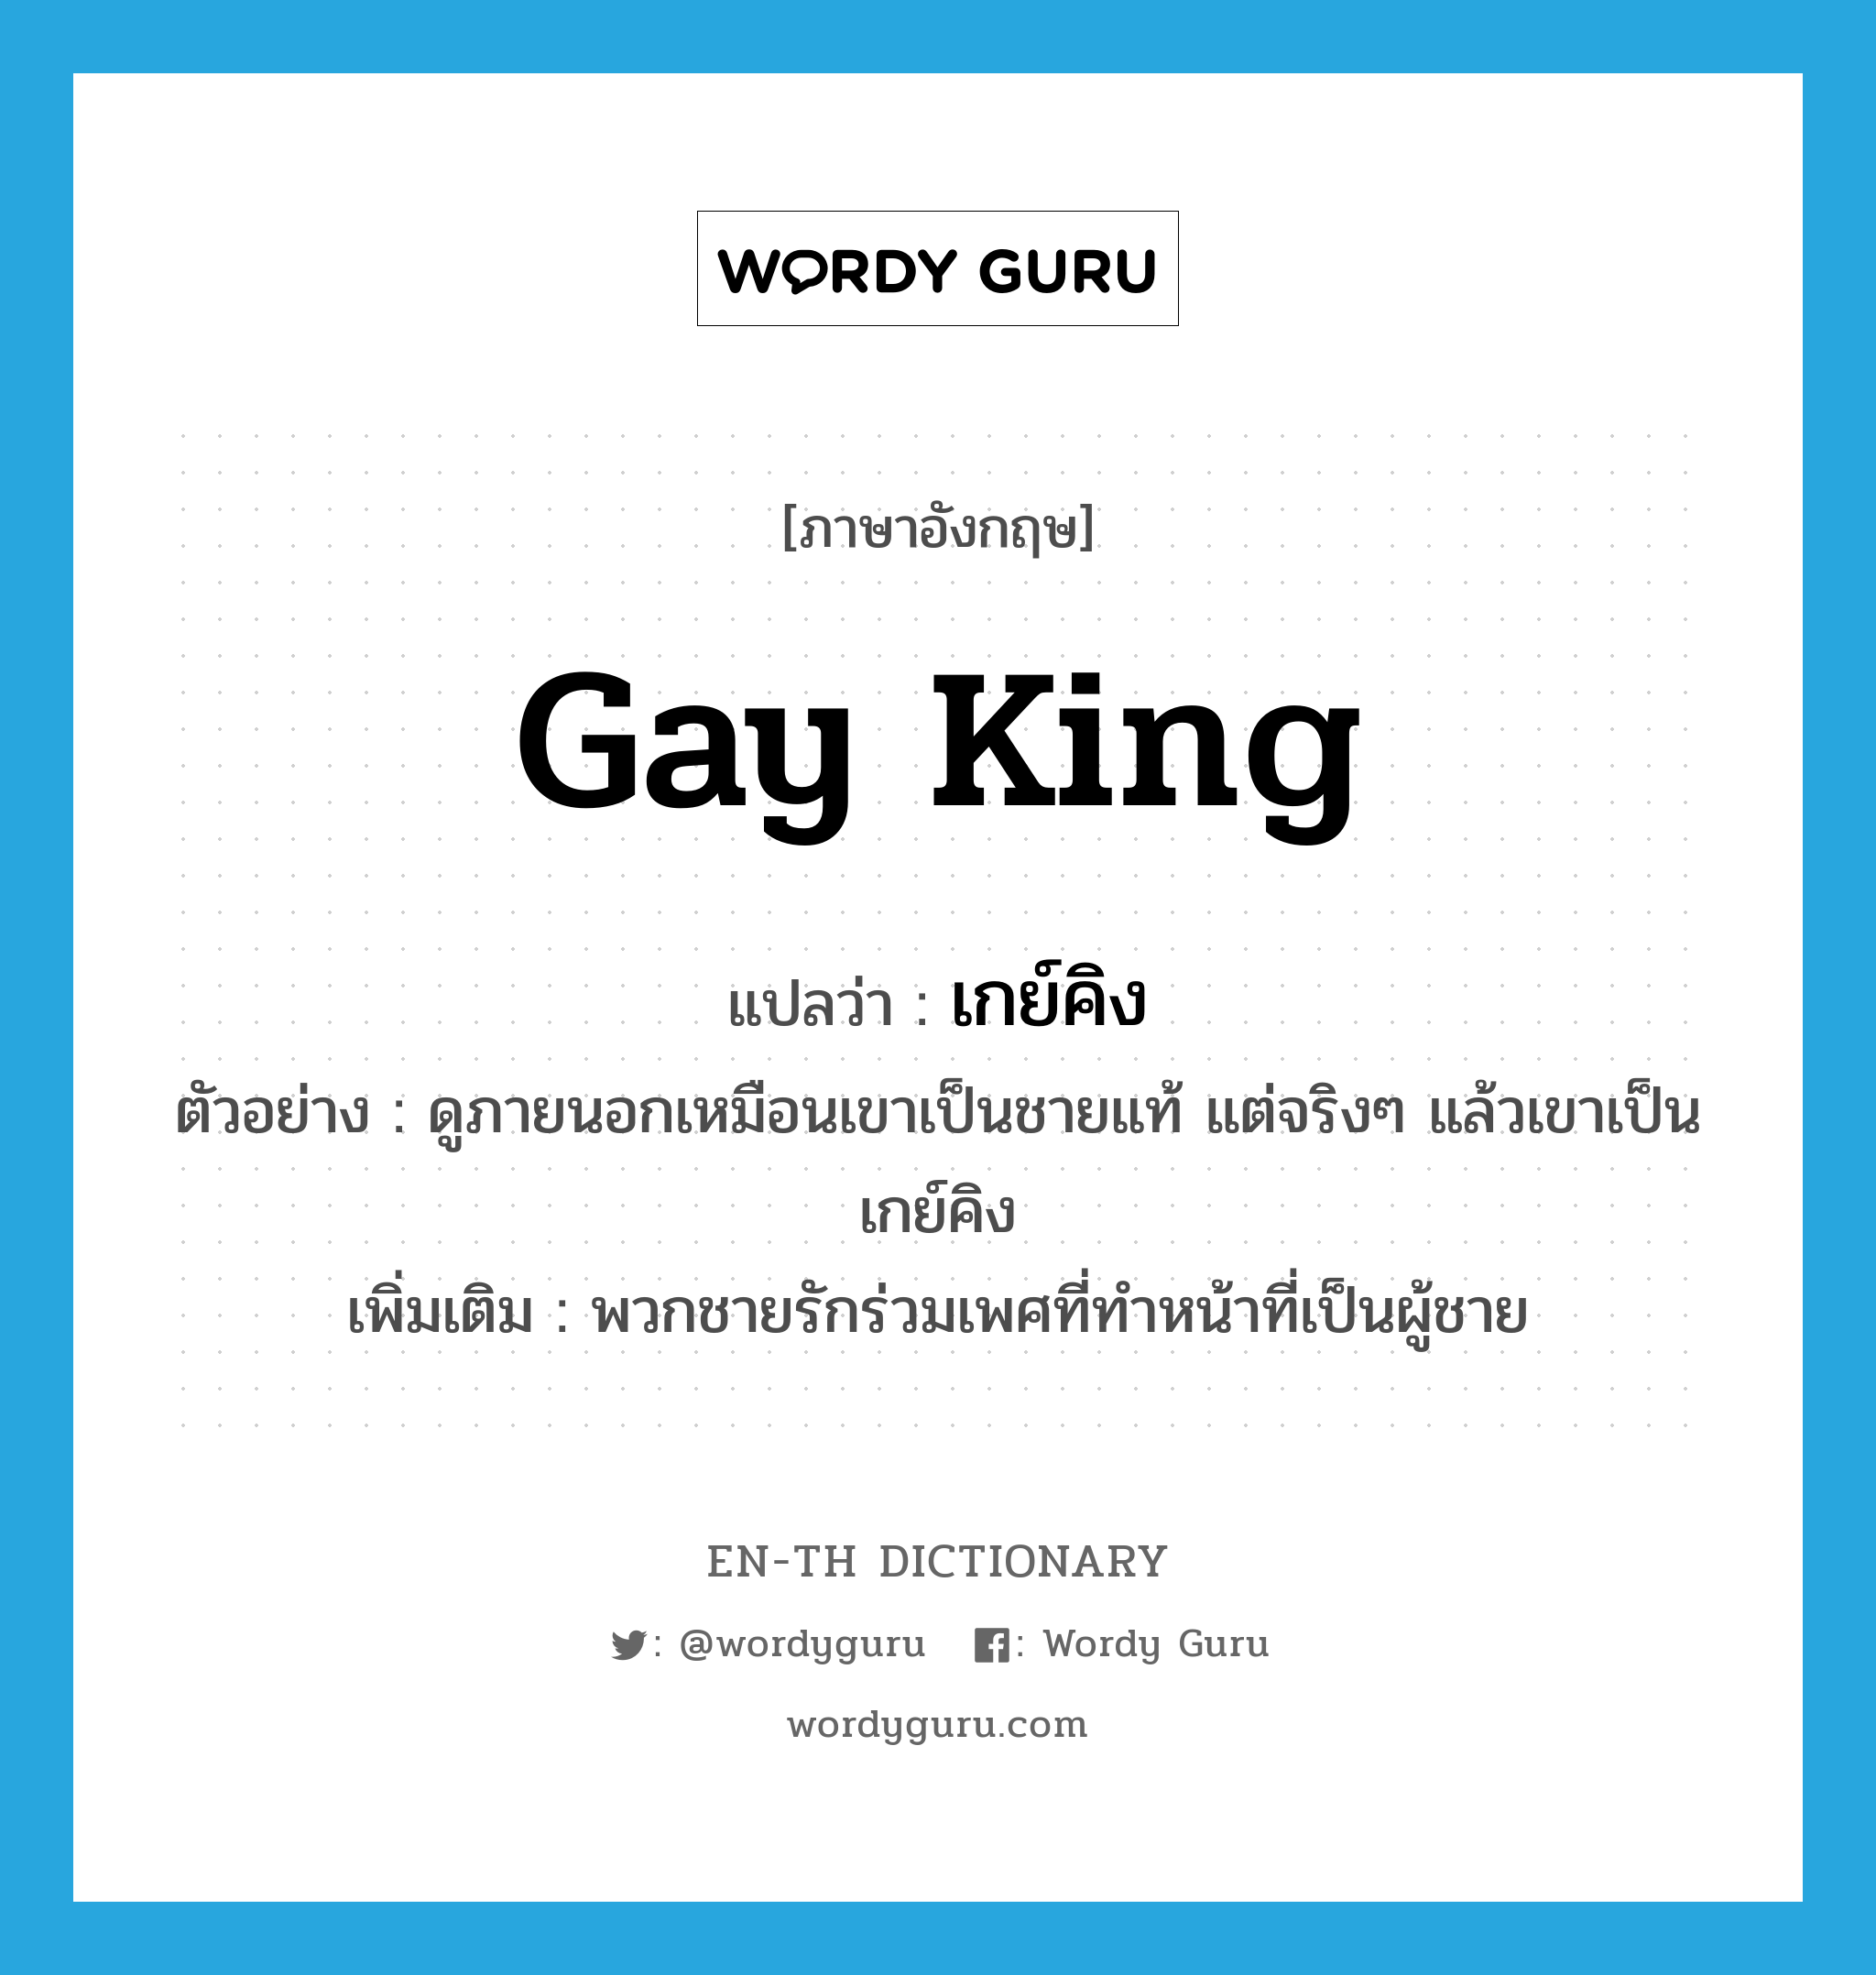 Gay King แปลว่า?, คำศัพท์ภาษาอังกฤษ Gay King แปลว่า เกย์คิง ประเภท N ตัวอย่าง ดูภายนอกเหมือนเขาเป็นชายแท้ แต่จริงๆ แล้วเขาเป็นเกย์คิง เพิ่มเติม พวกชายรักร่วมเพศที่ทำหน้าที่เป็นผู้ชาย หมวด N